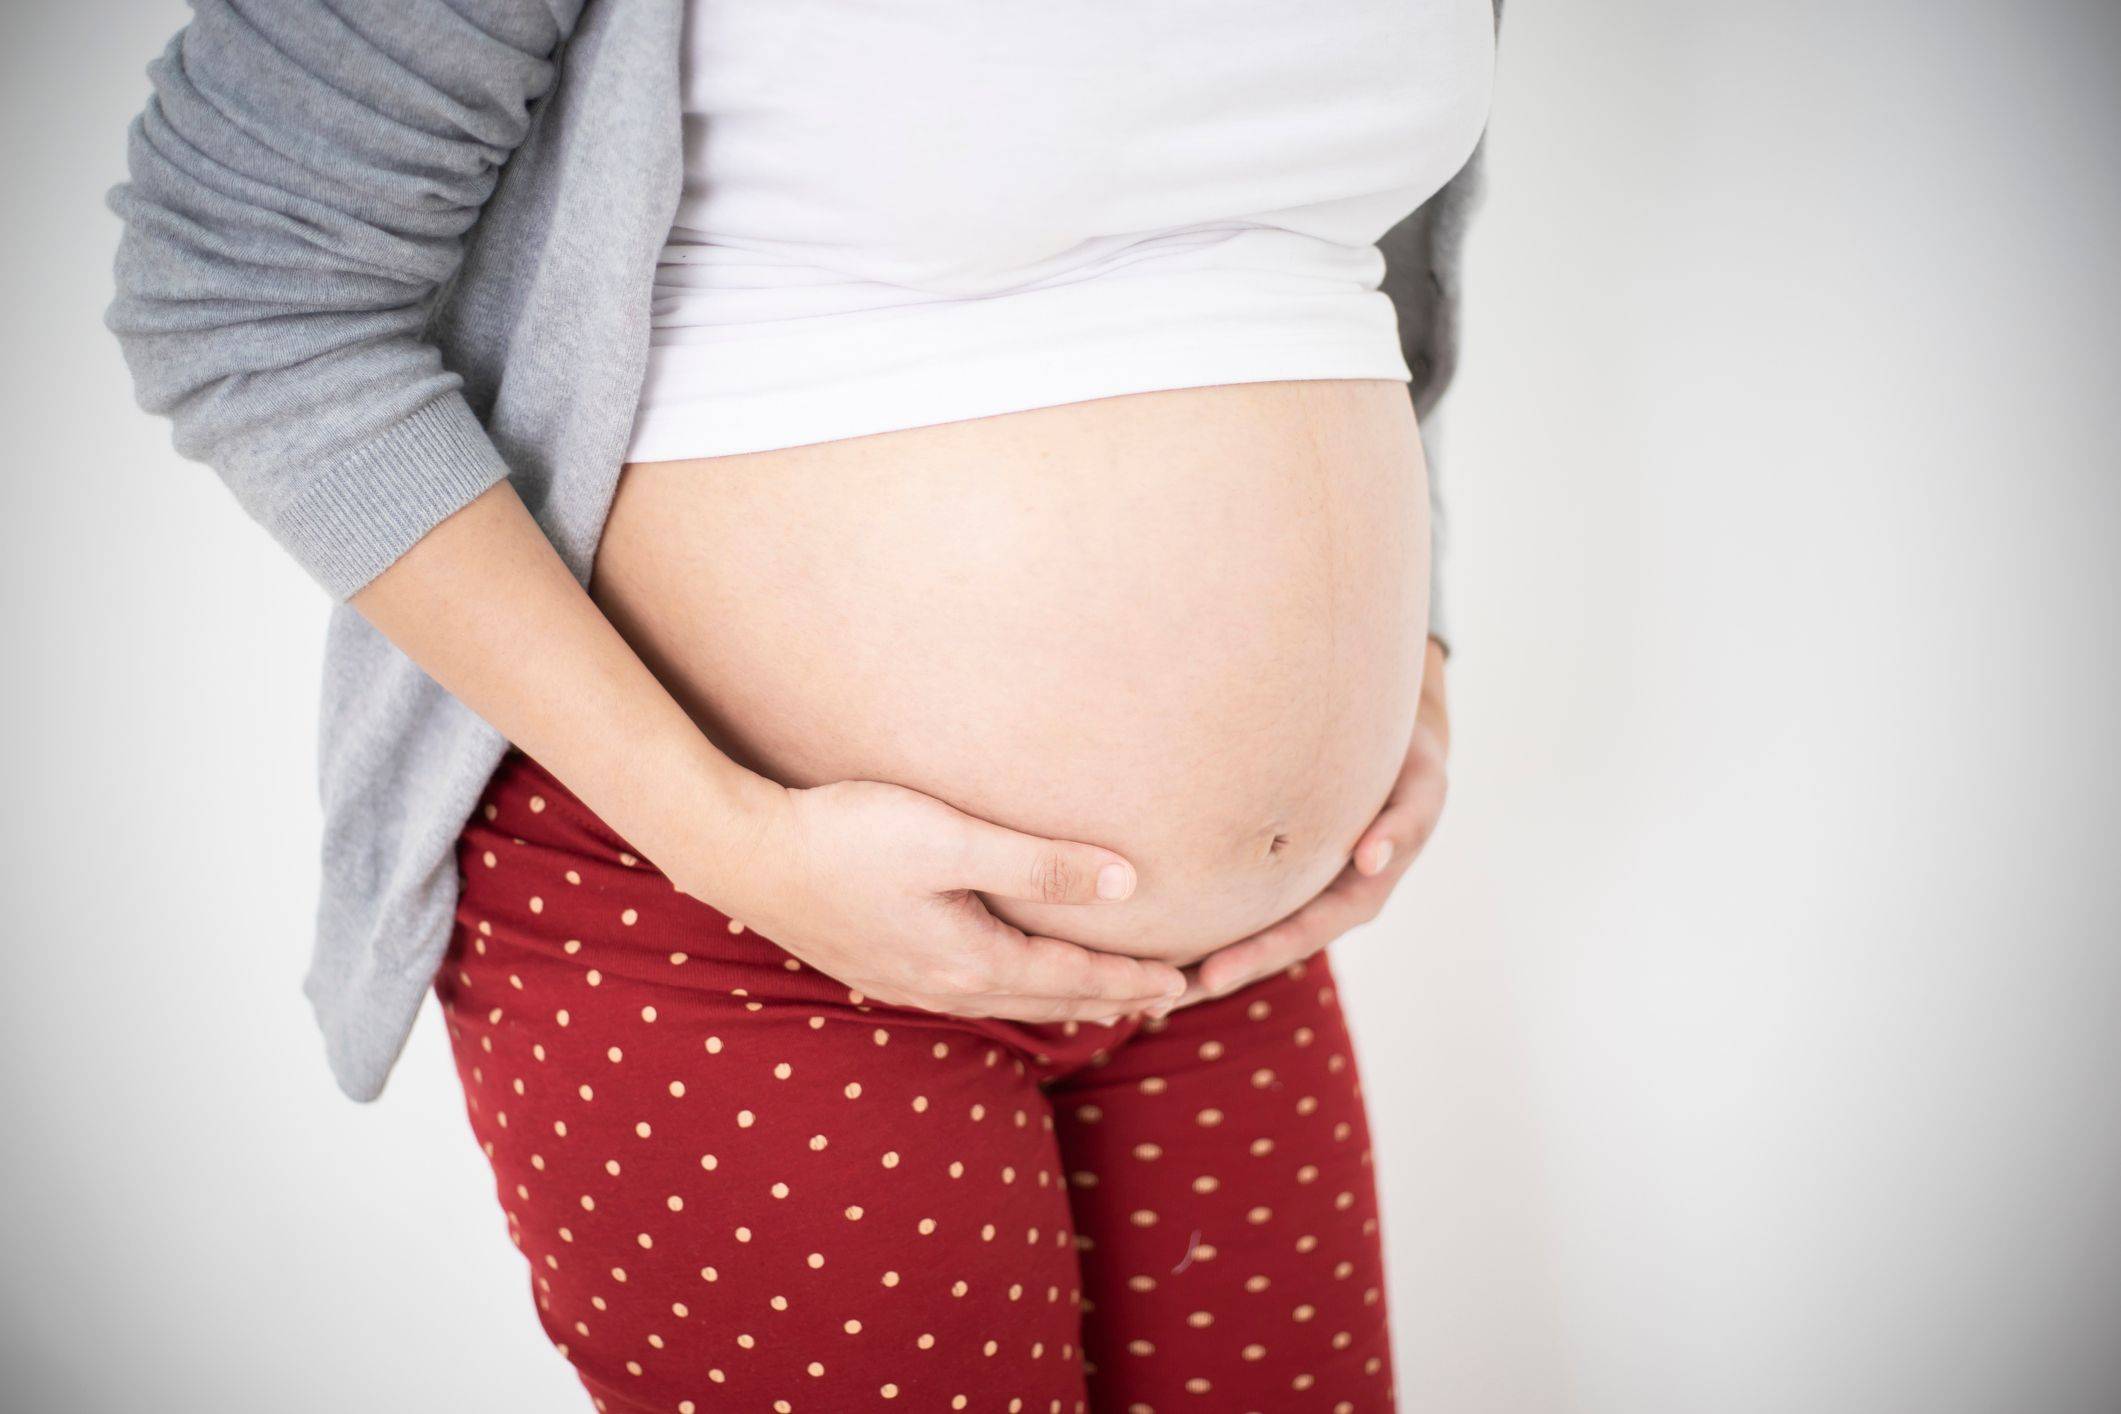 Ковид во время беременности: симптомы, лечение